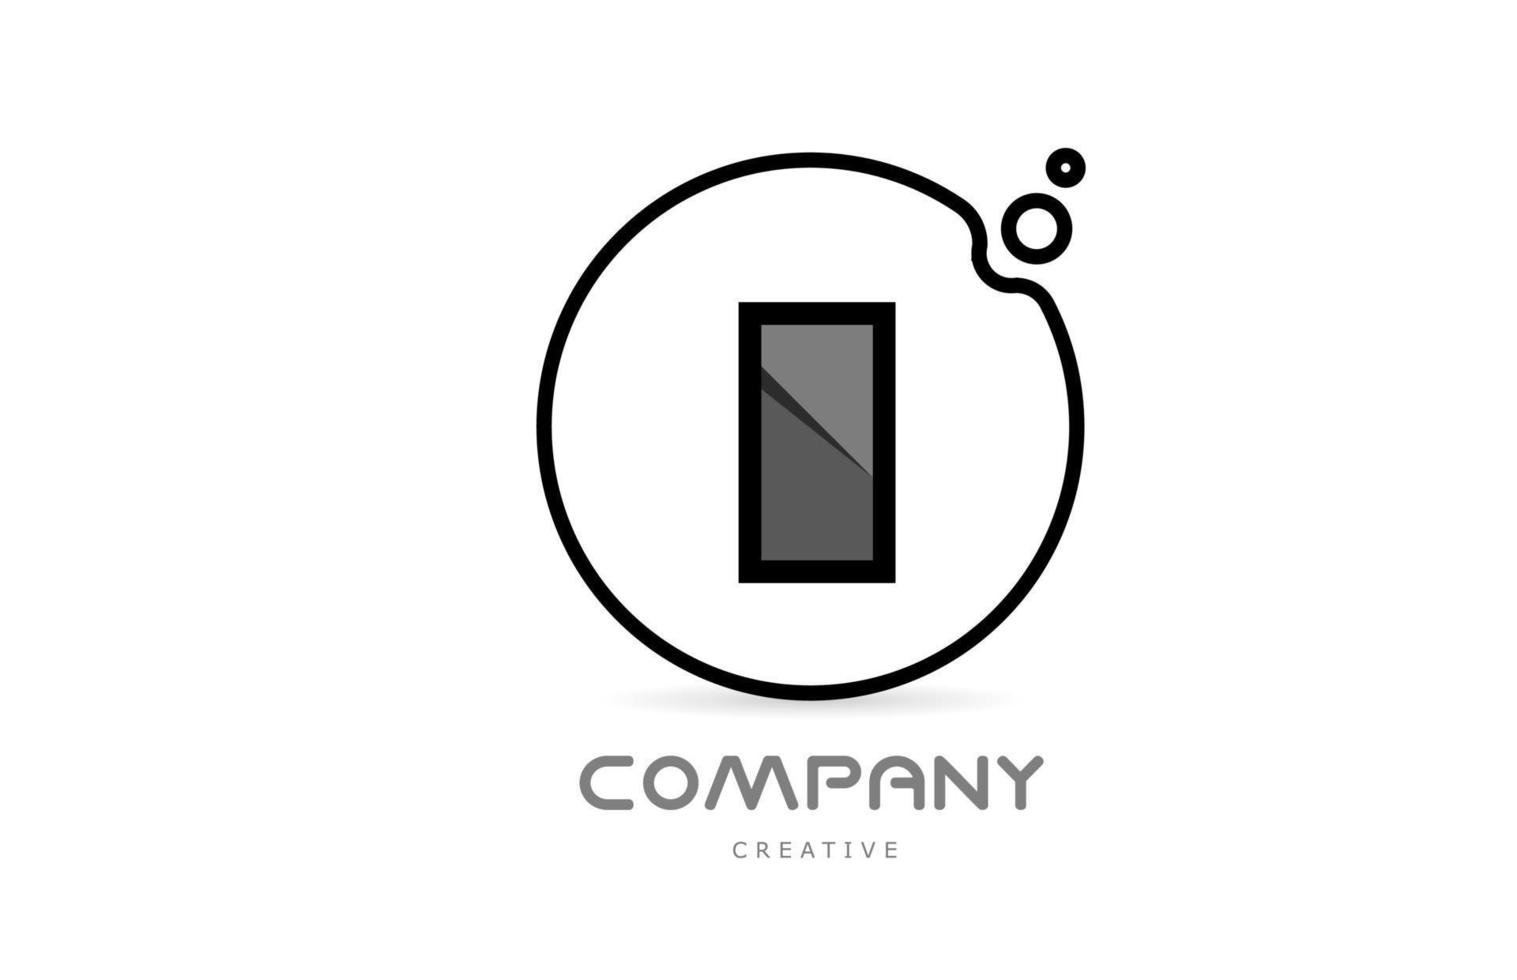 i icono del logotipo de la letra del alfabeto geométrico en blanco y negro con círculo. plantilla creativa para empresa y negocio vector